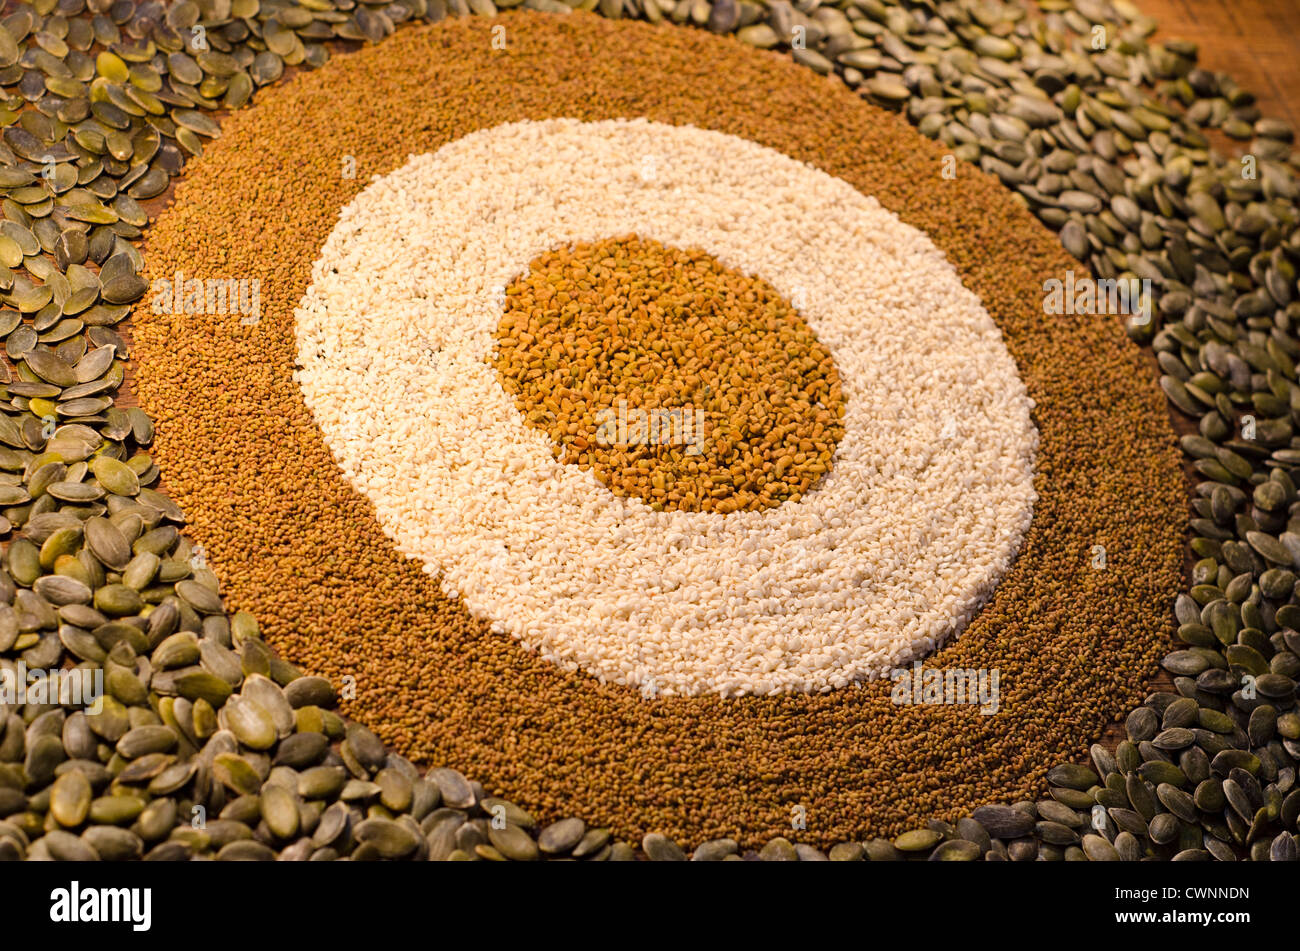 Une circulaire, motif géométrique à partir d'une variété de graines, y compris les graines de citrouille, graines de sésame, graines de alfaf amd les graines de fenugrec. Banque D'Images